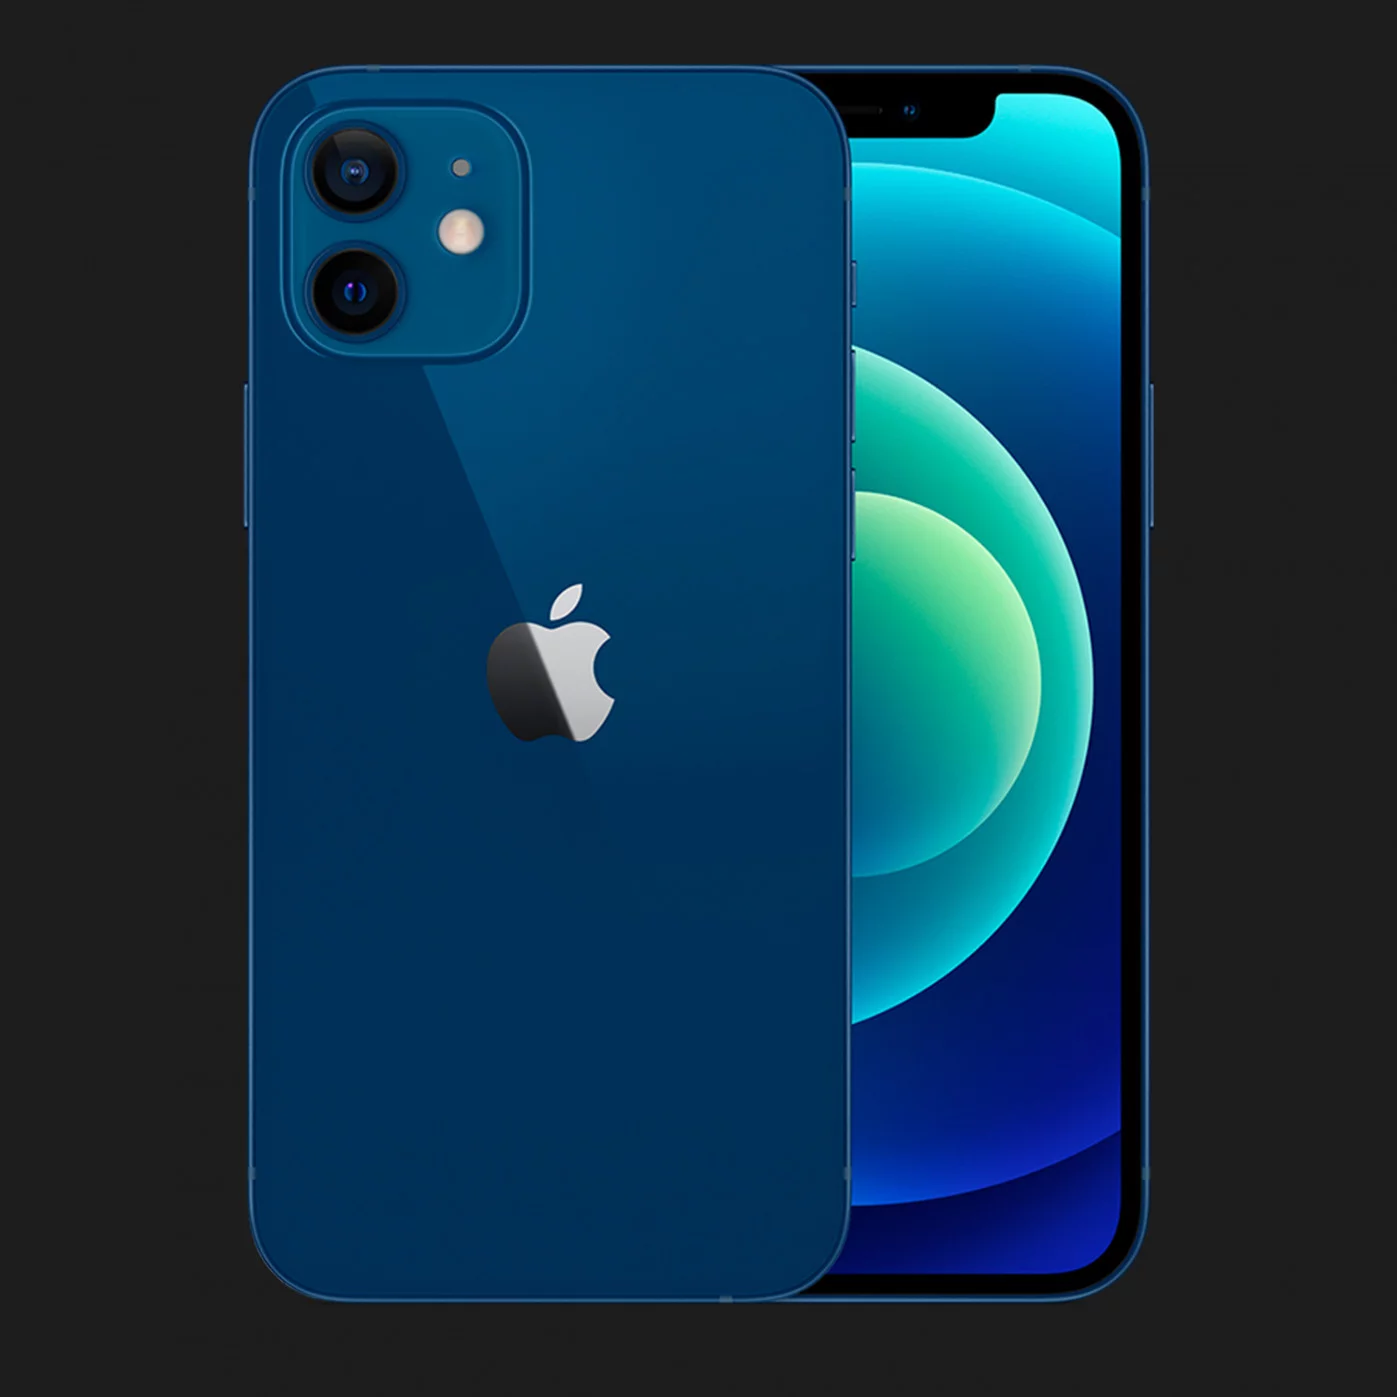 Купить Apple iPhone 12 64GB (Blue) — цены ⚡, отзывы ⚡, характеристики — ЯБКО